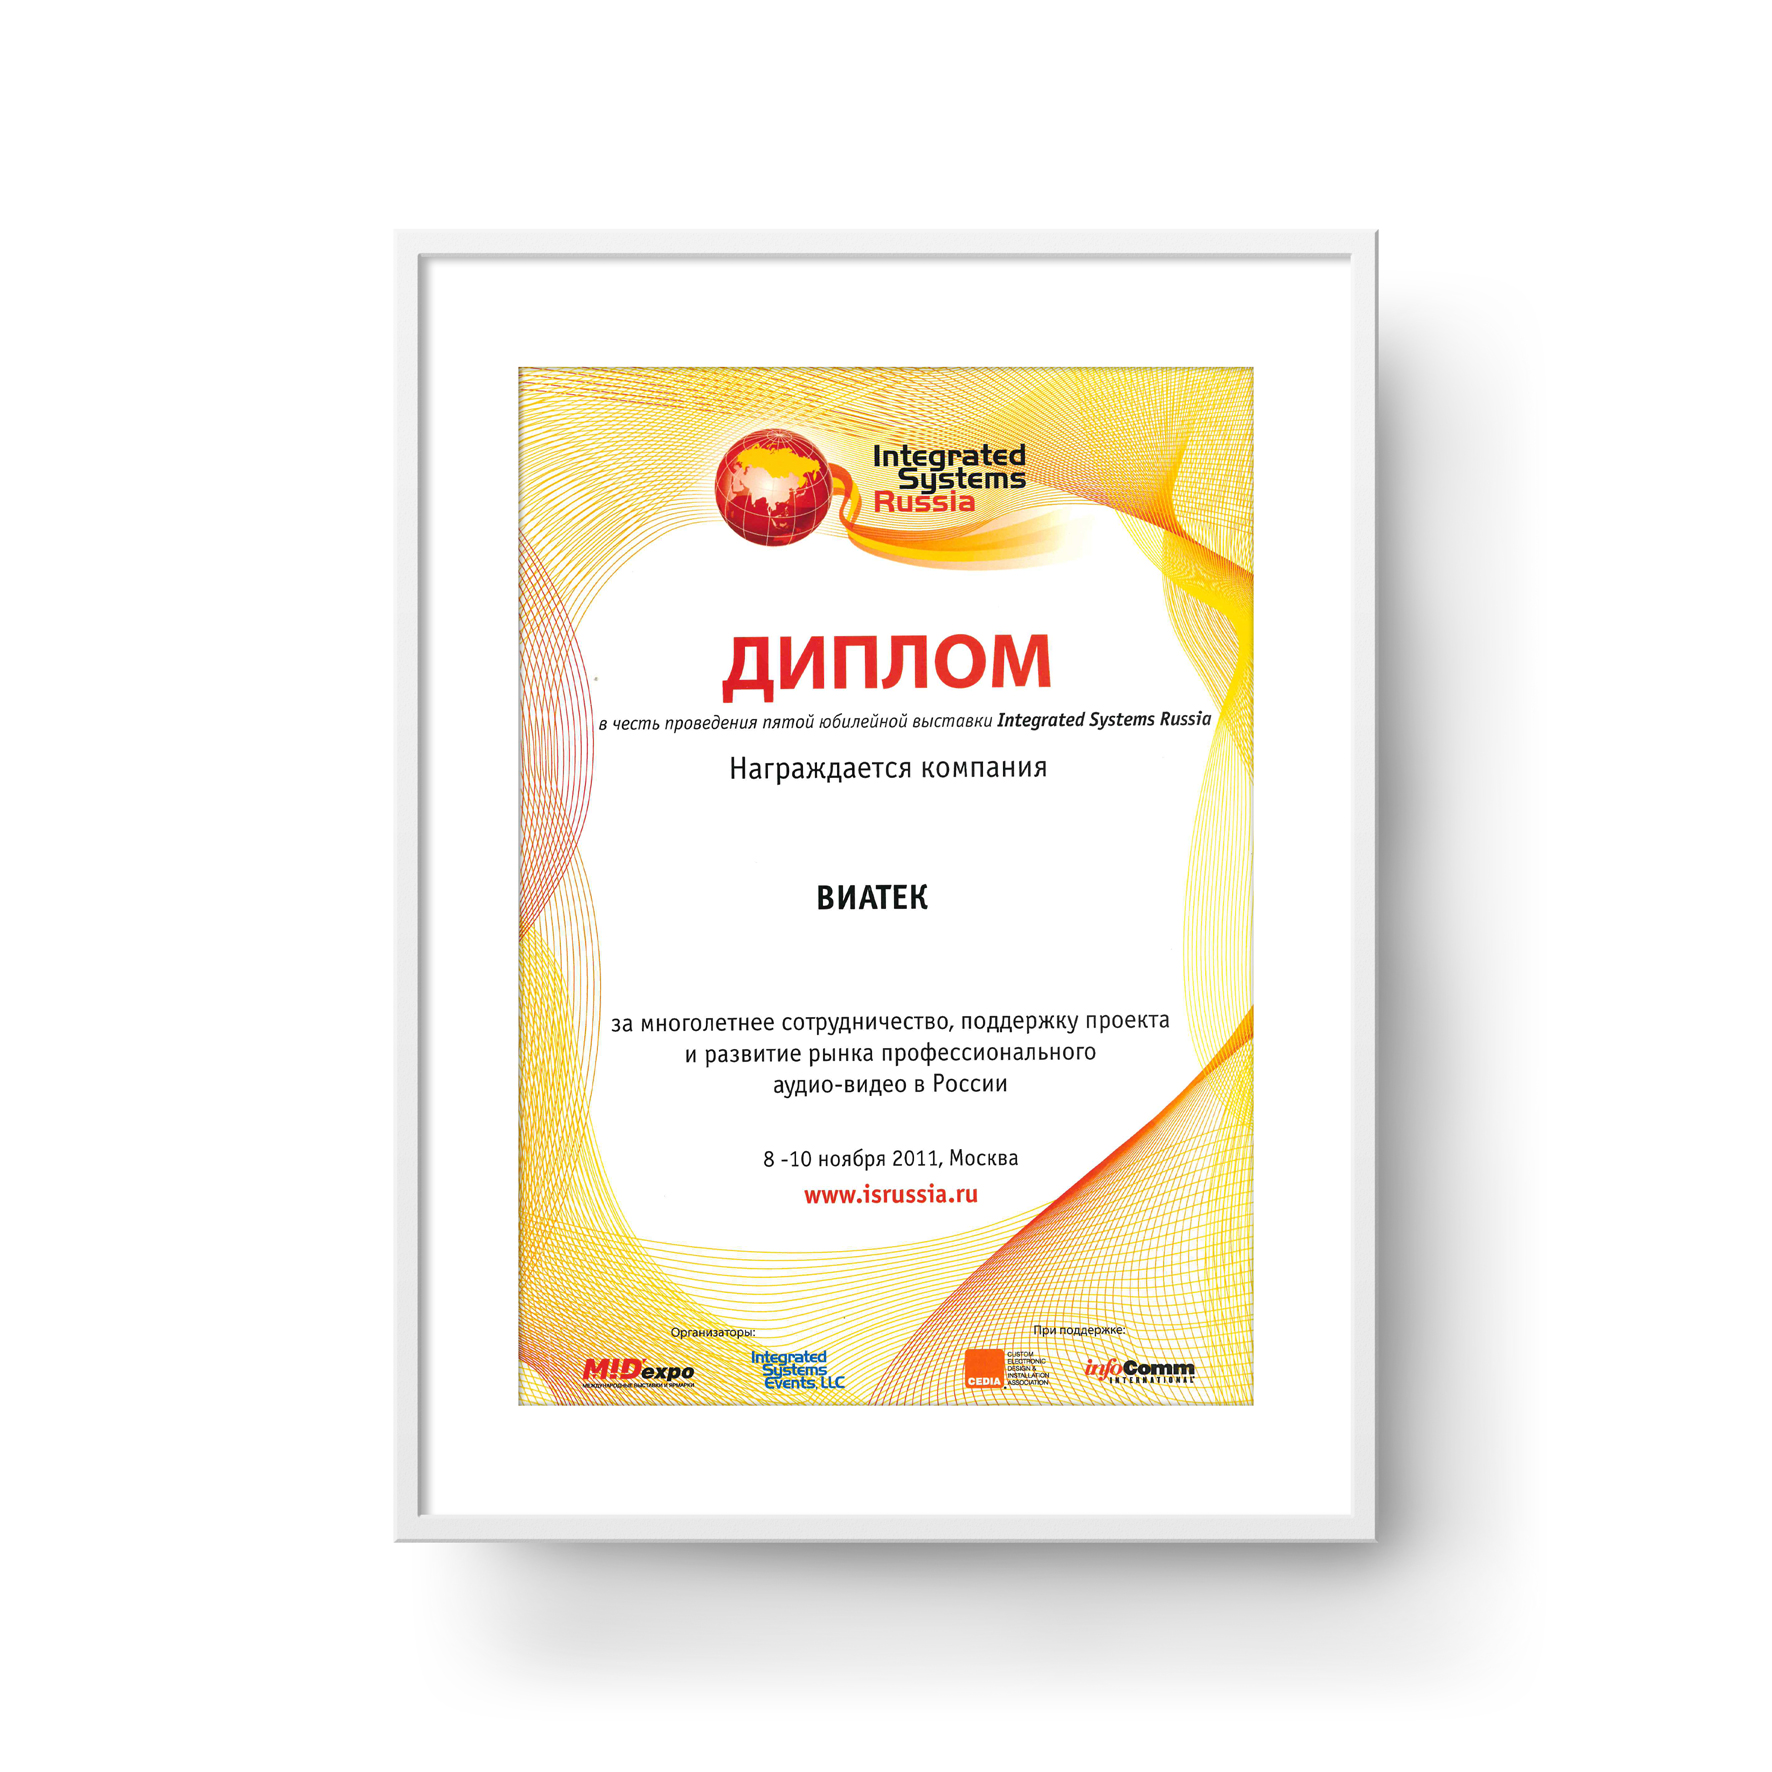 ГК «ВИАТЕК» получила диплом в честь проведения пятой юбилейной выставки Integrated Systems Russia